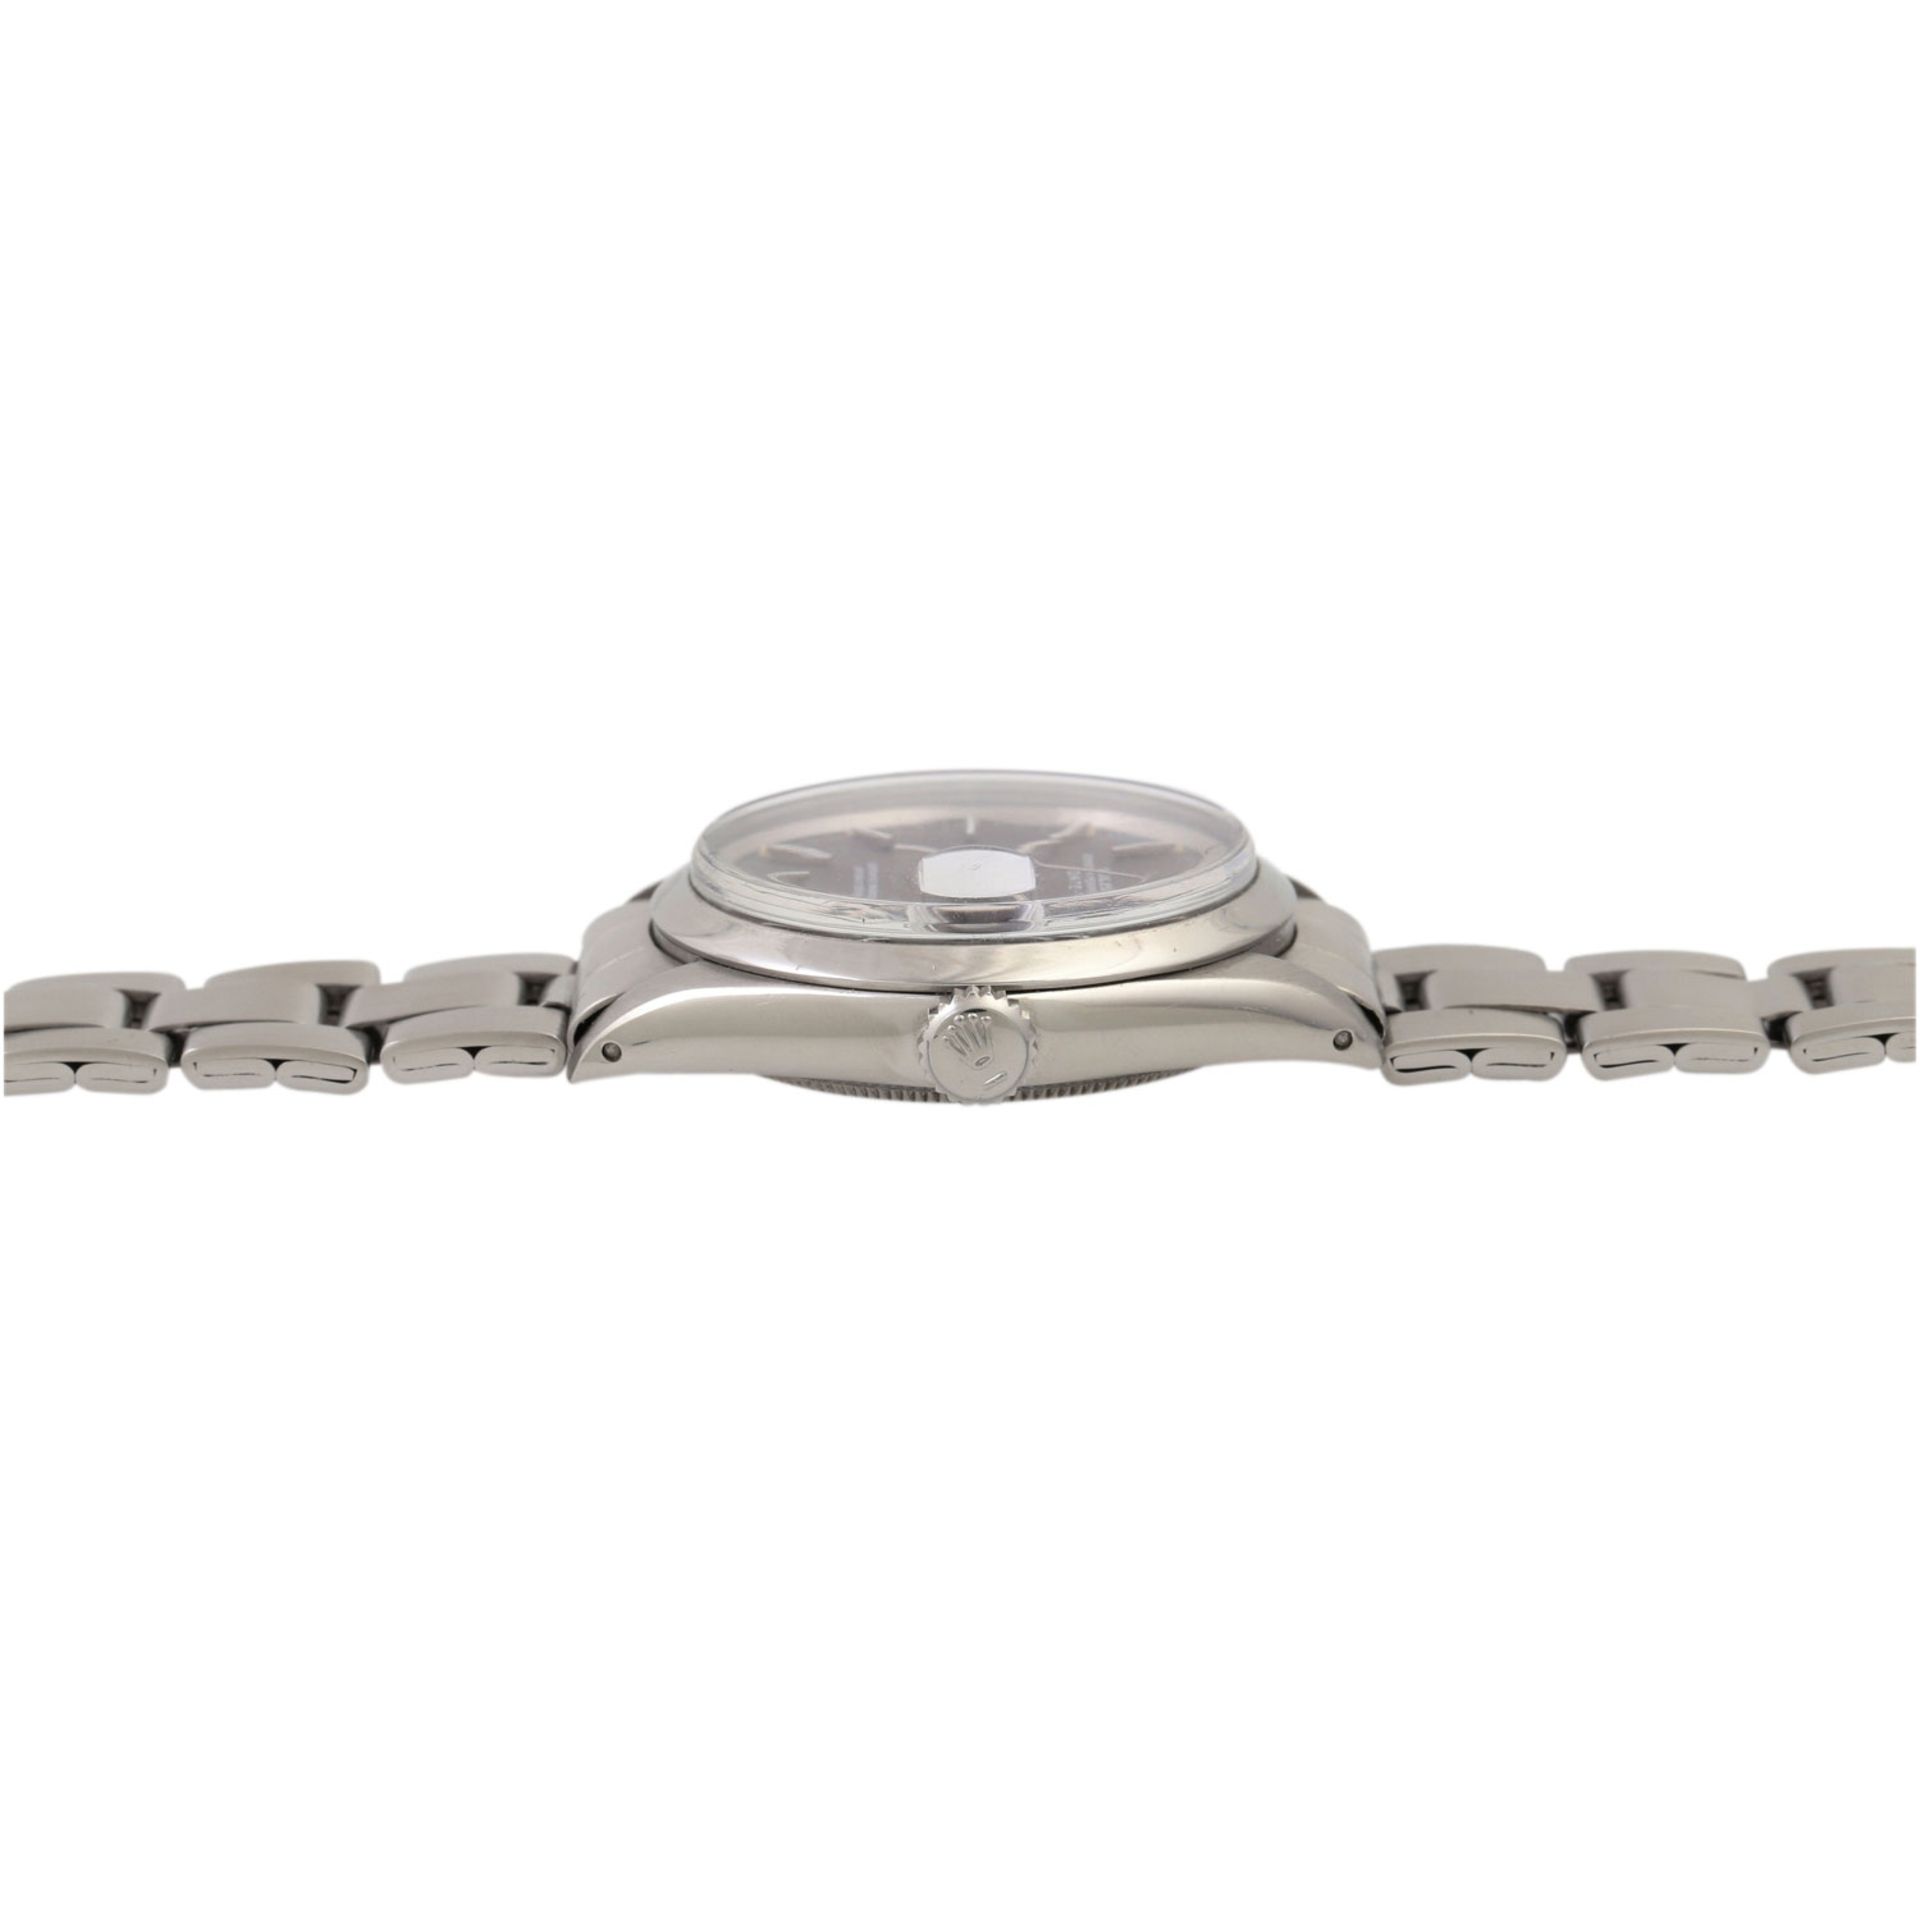 ROLEX Date, Ref. 1500. Armbanduhr. Edelstahl. Automatic-Werk. Deutliche Gebrauchsspure - Bild 3 aus 5